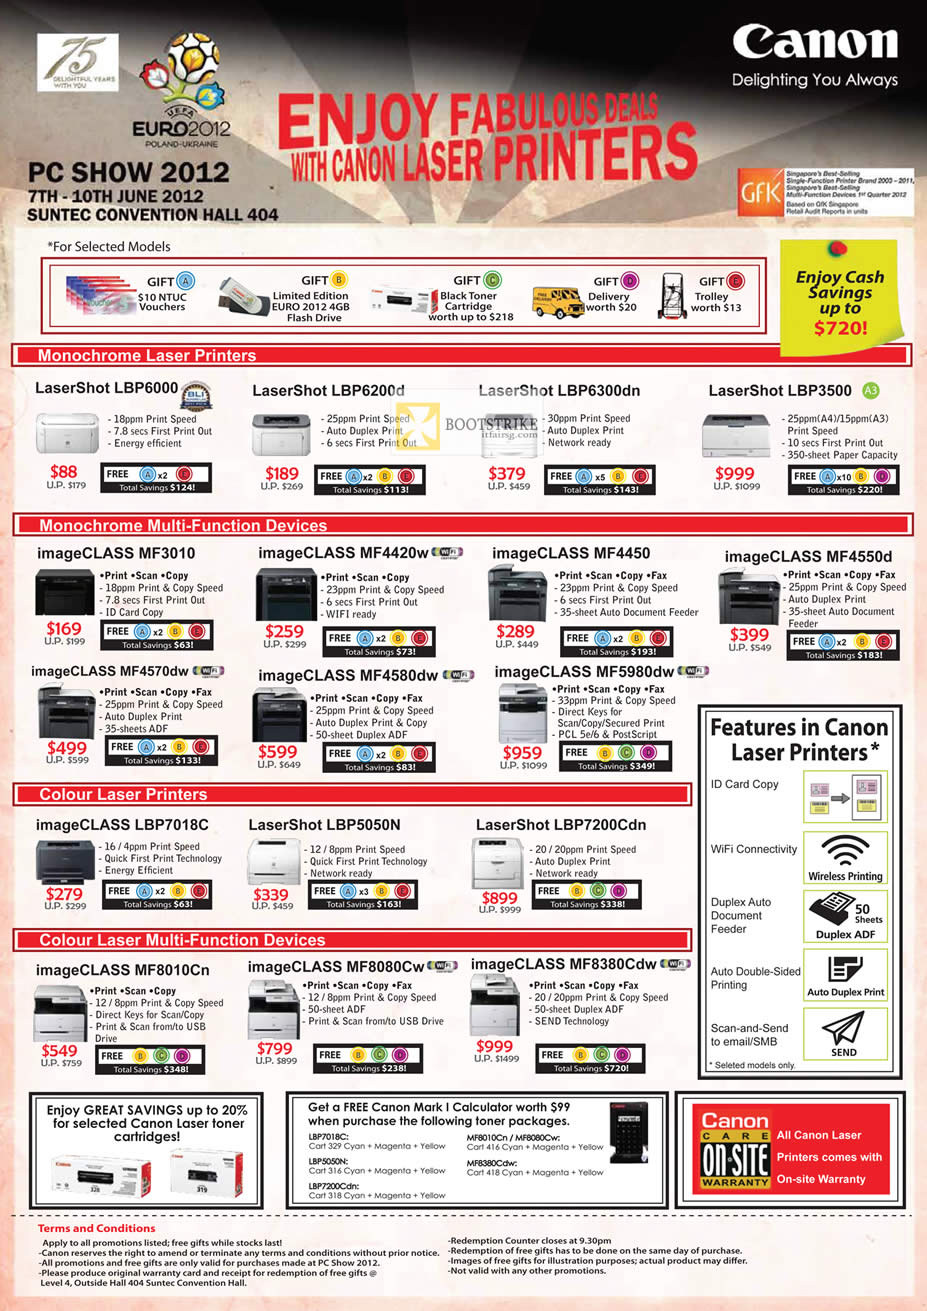 PC SHOW 2012 price list image brochure of Canon Printers Laser LBP6000, LBP6200d, LBP6300dn, LBP3500, MF3010, MF4570dw, MF4580dw, MF4420w, MF4450, MF5980dw